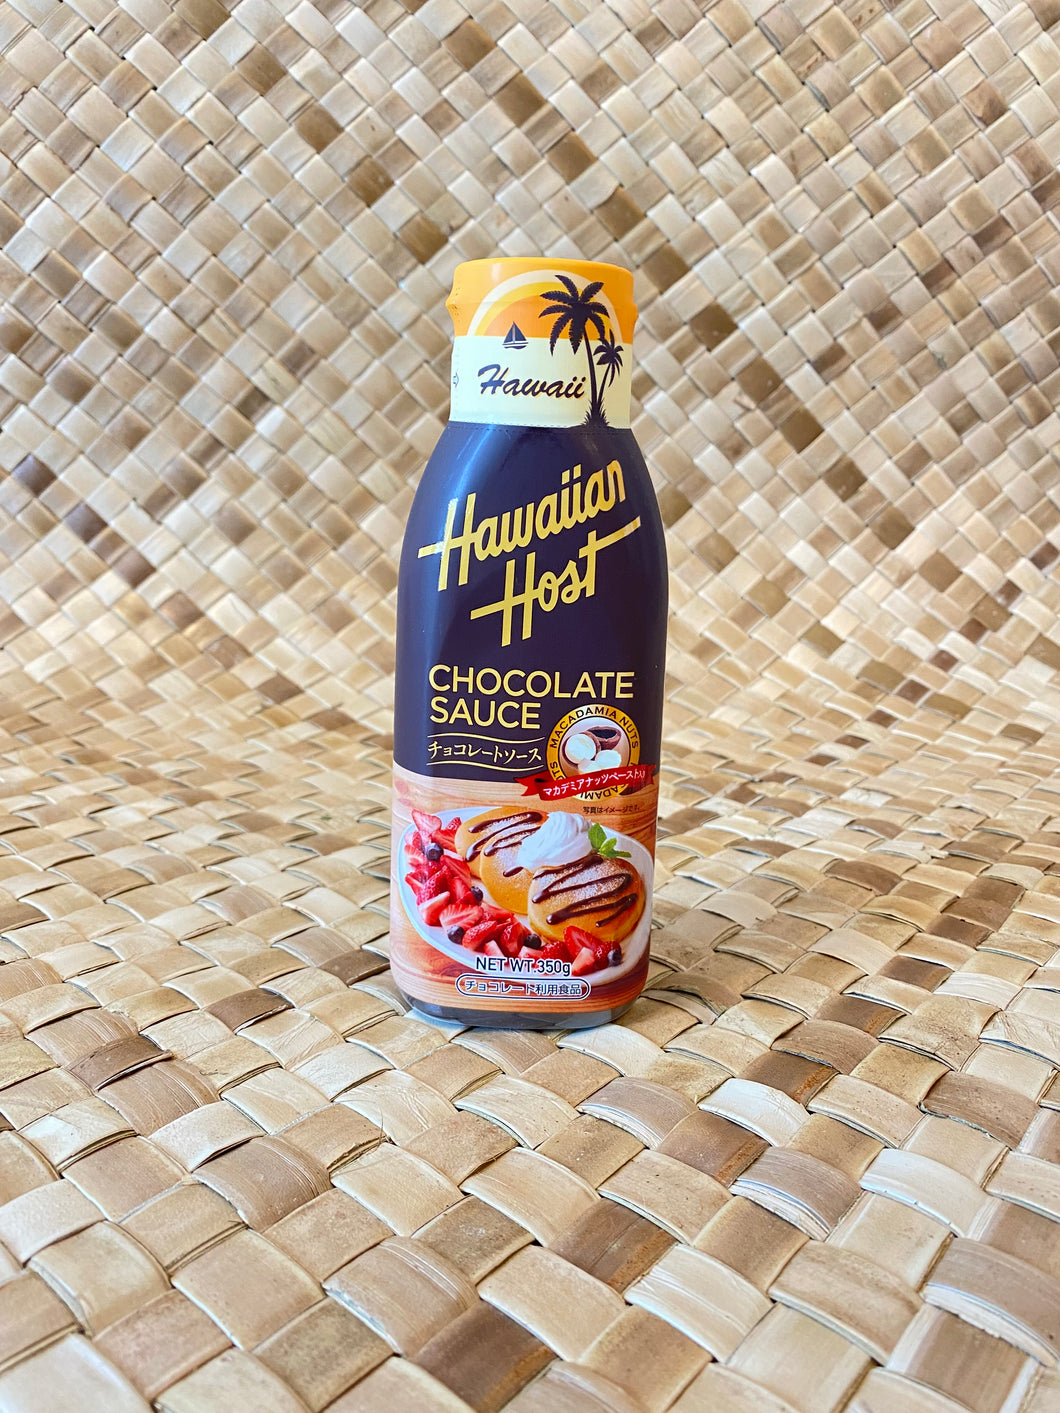 Hawaiian Hostチョコレートソース